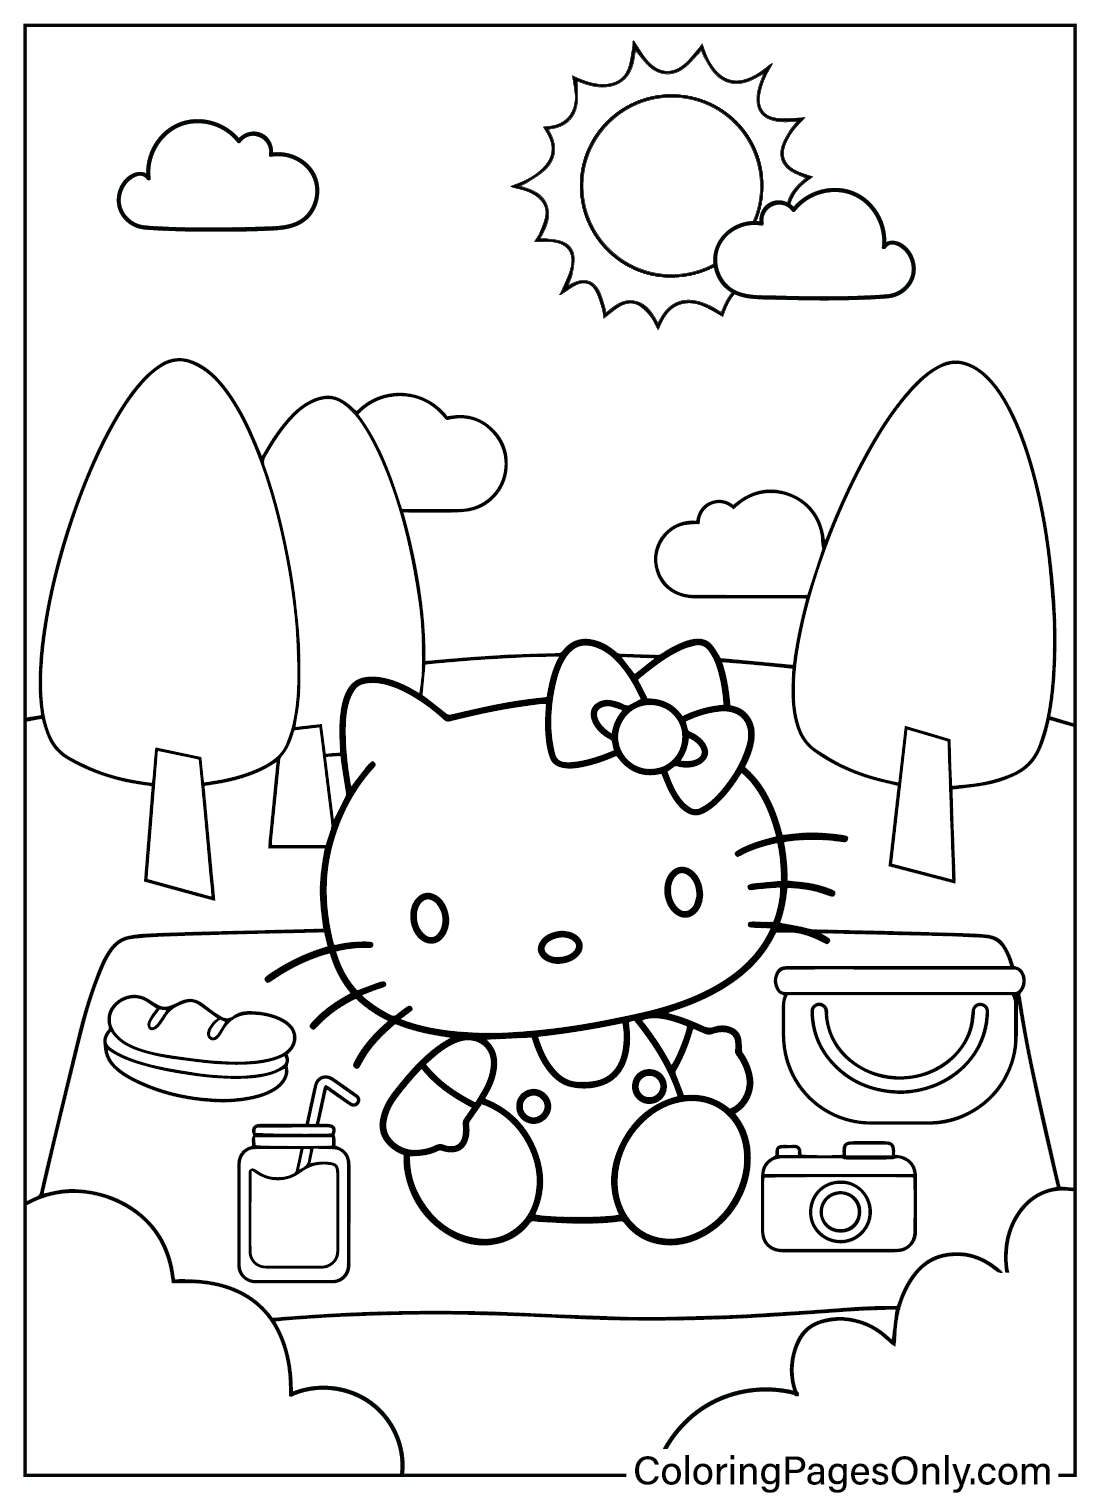 Folha para colorir da Hello Kitty